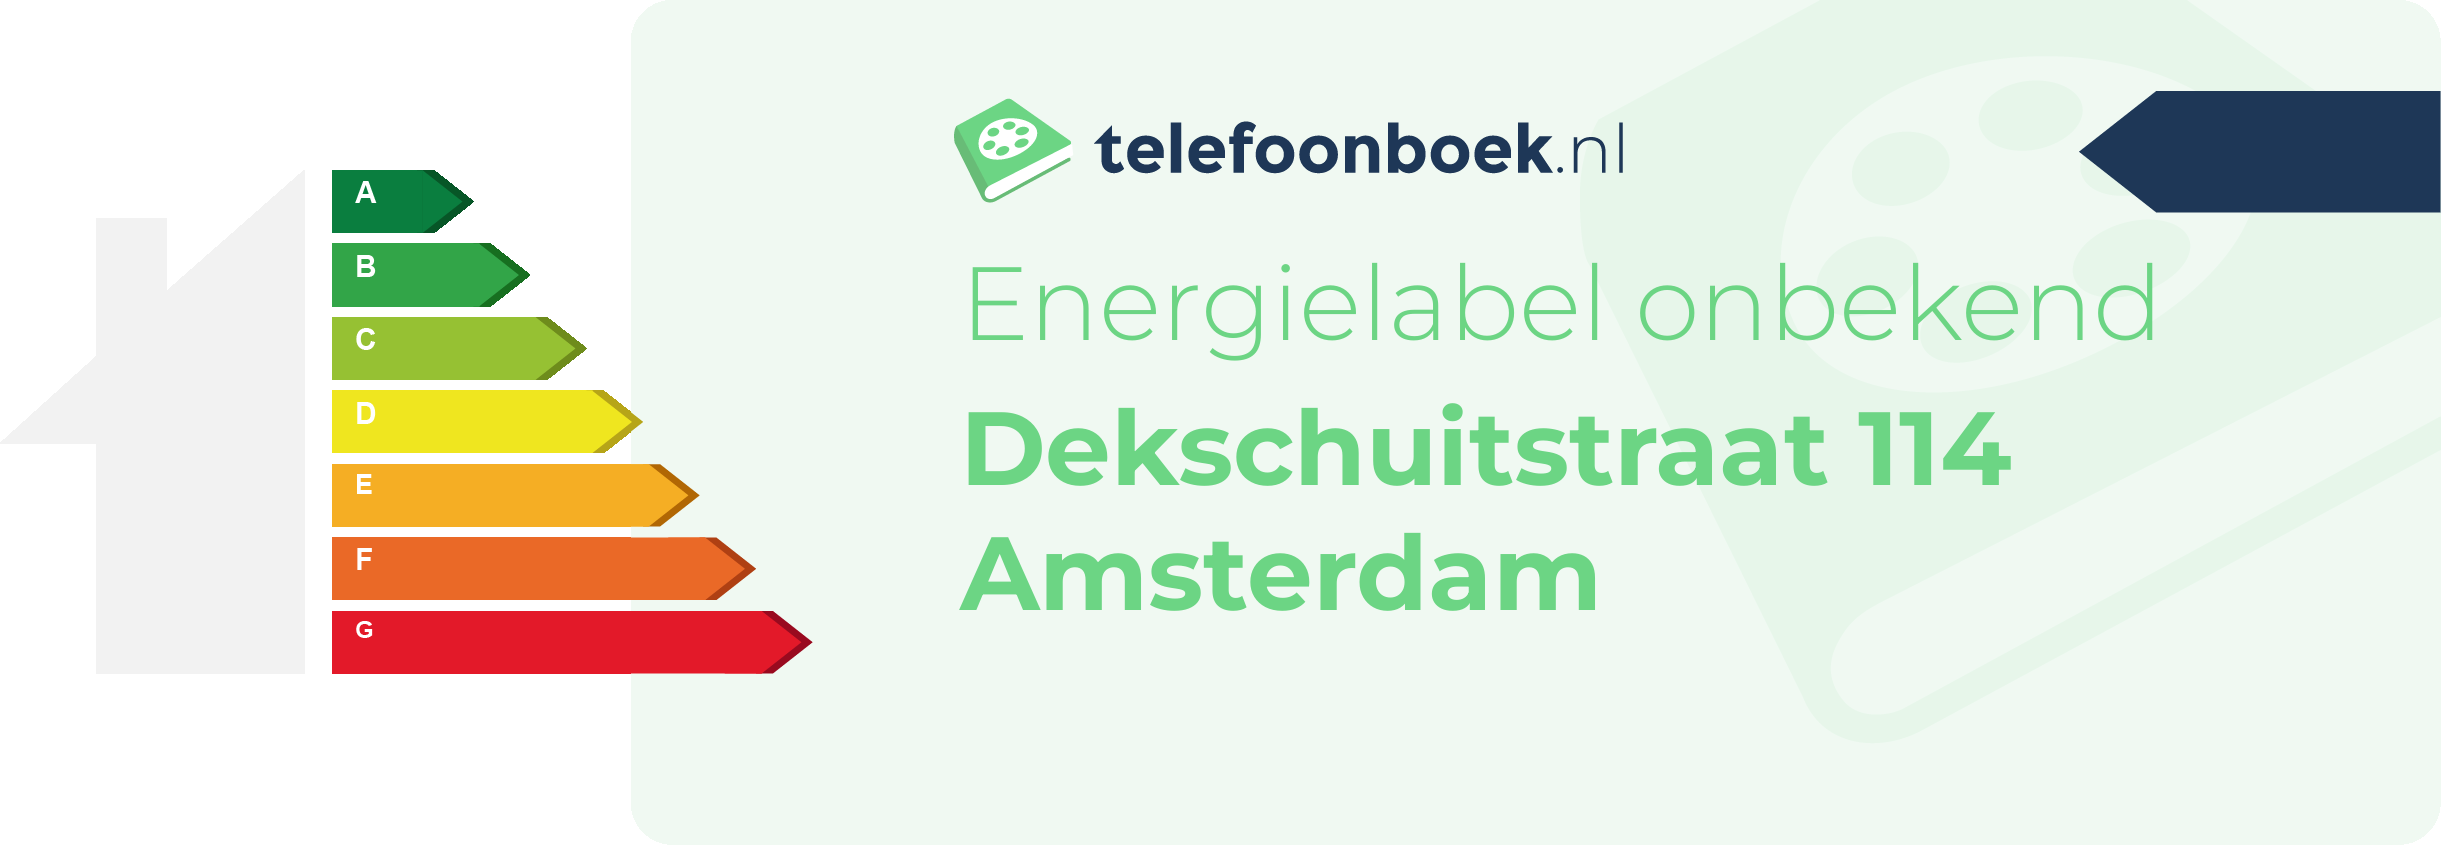 Energielabel Dekschuitstraat 114 Amsterdam